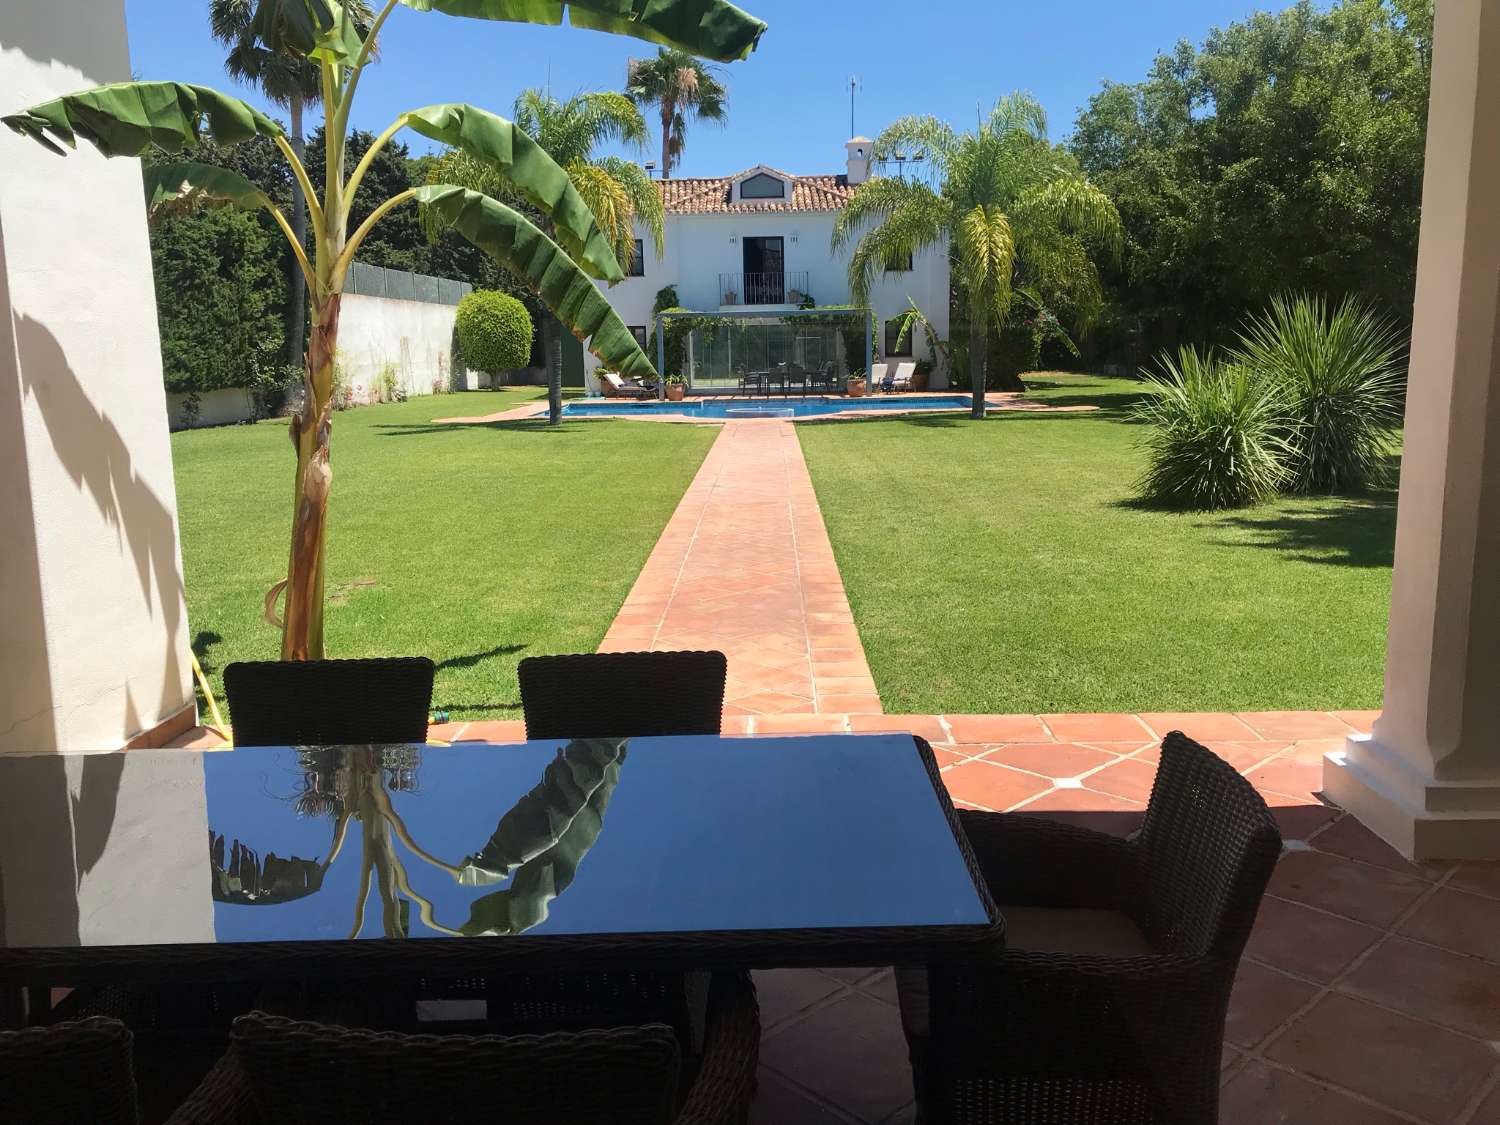 Uitzonderlijke villa in Andalusische boerderijstijl, ingericht in een modern huis, met een eigen tennisbaan! Enorm perceel van 3.400 m2.